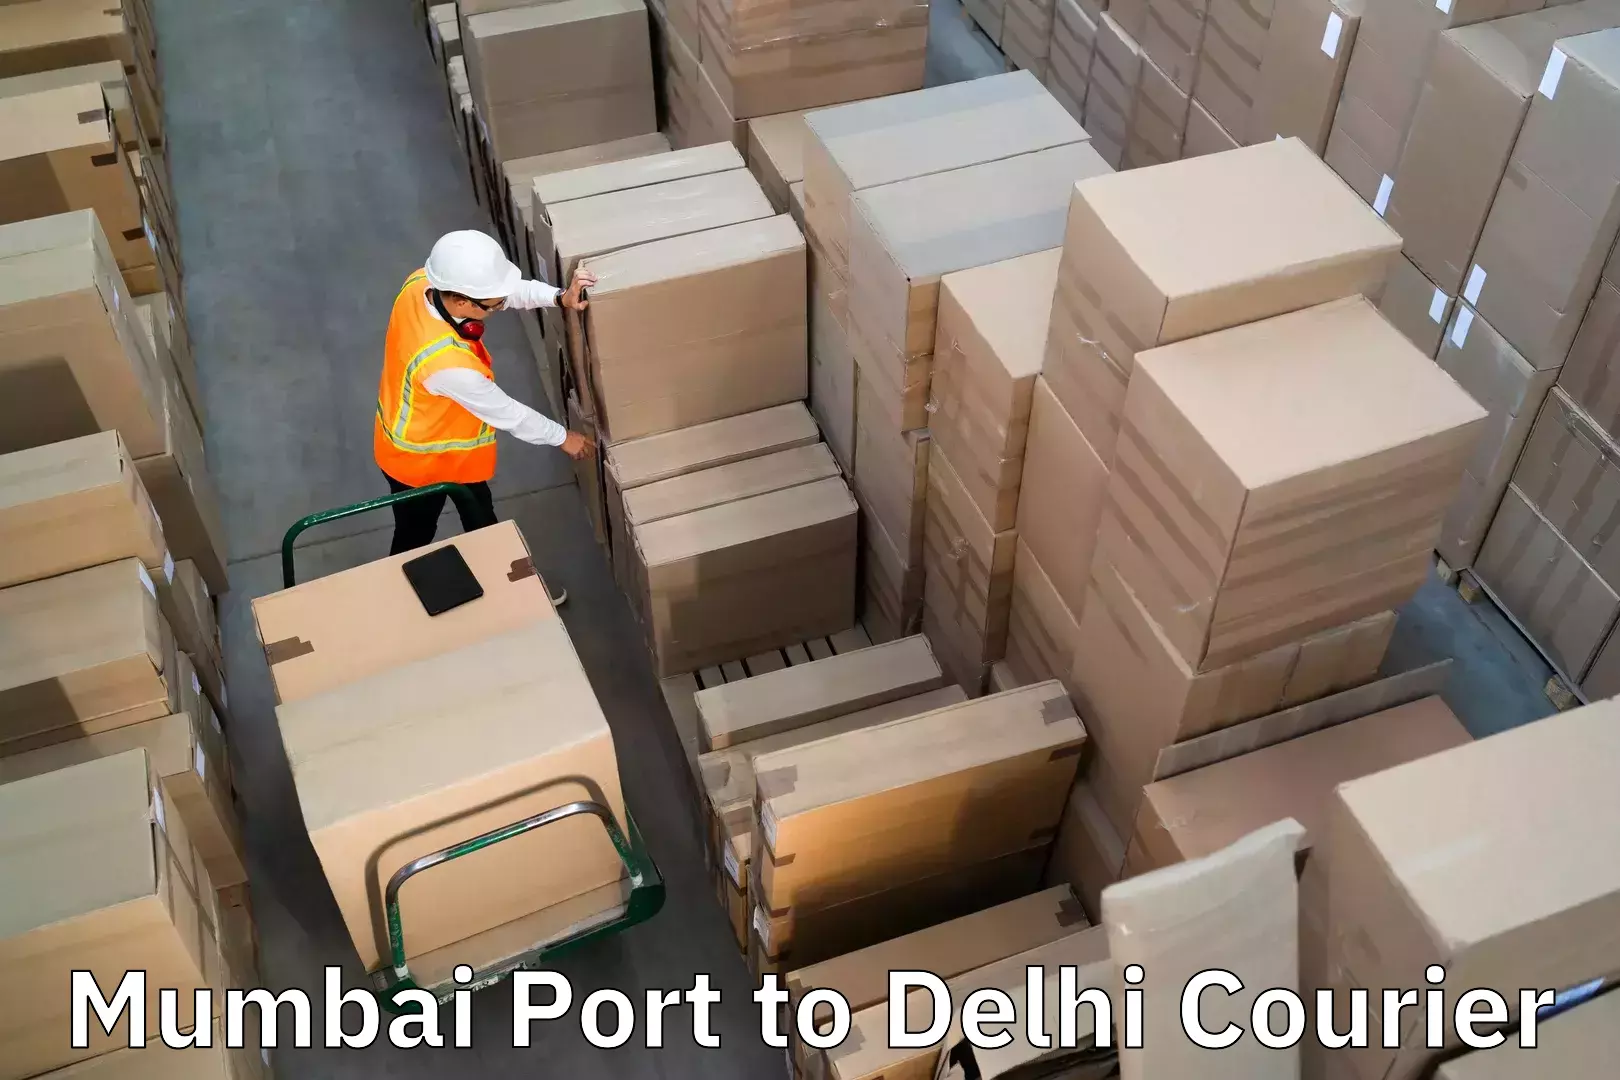 Hassle-free luggage shipping Mumbai Port to University of Delhi